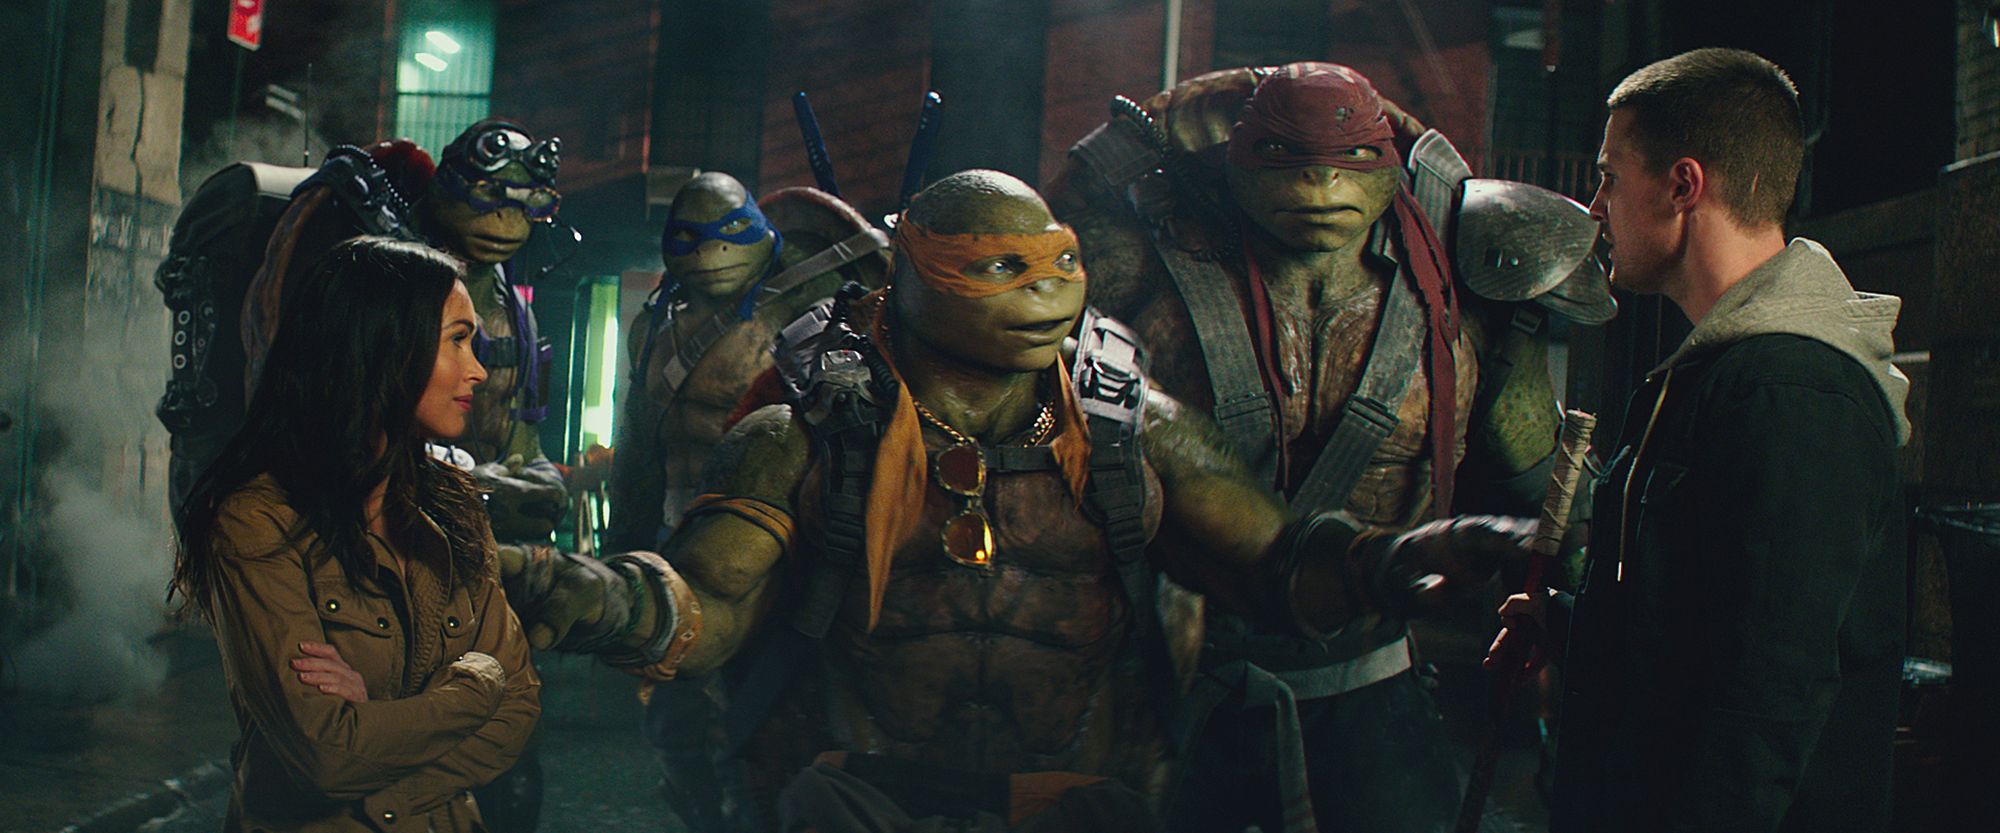 tmnt2039 Teenage Mutant Ninja Turtles 2 Trailer Screenshots